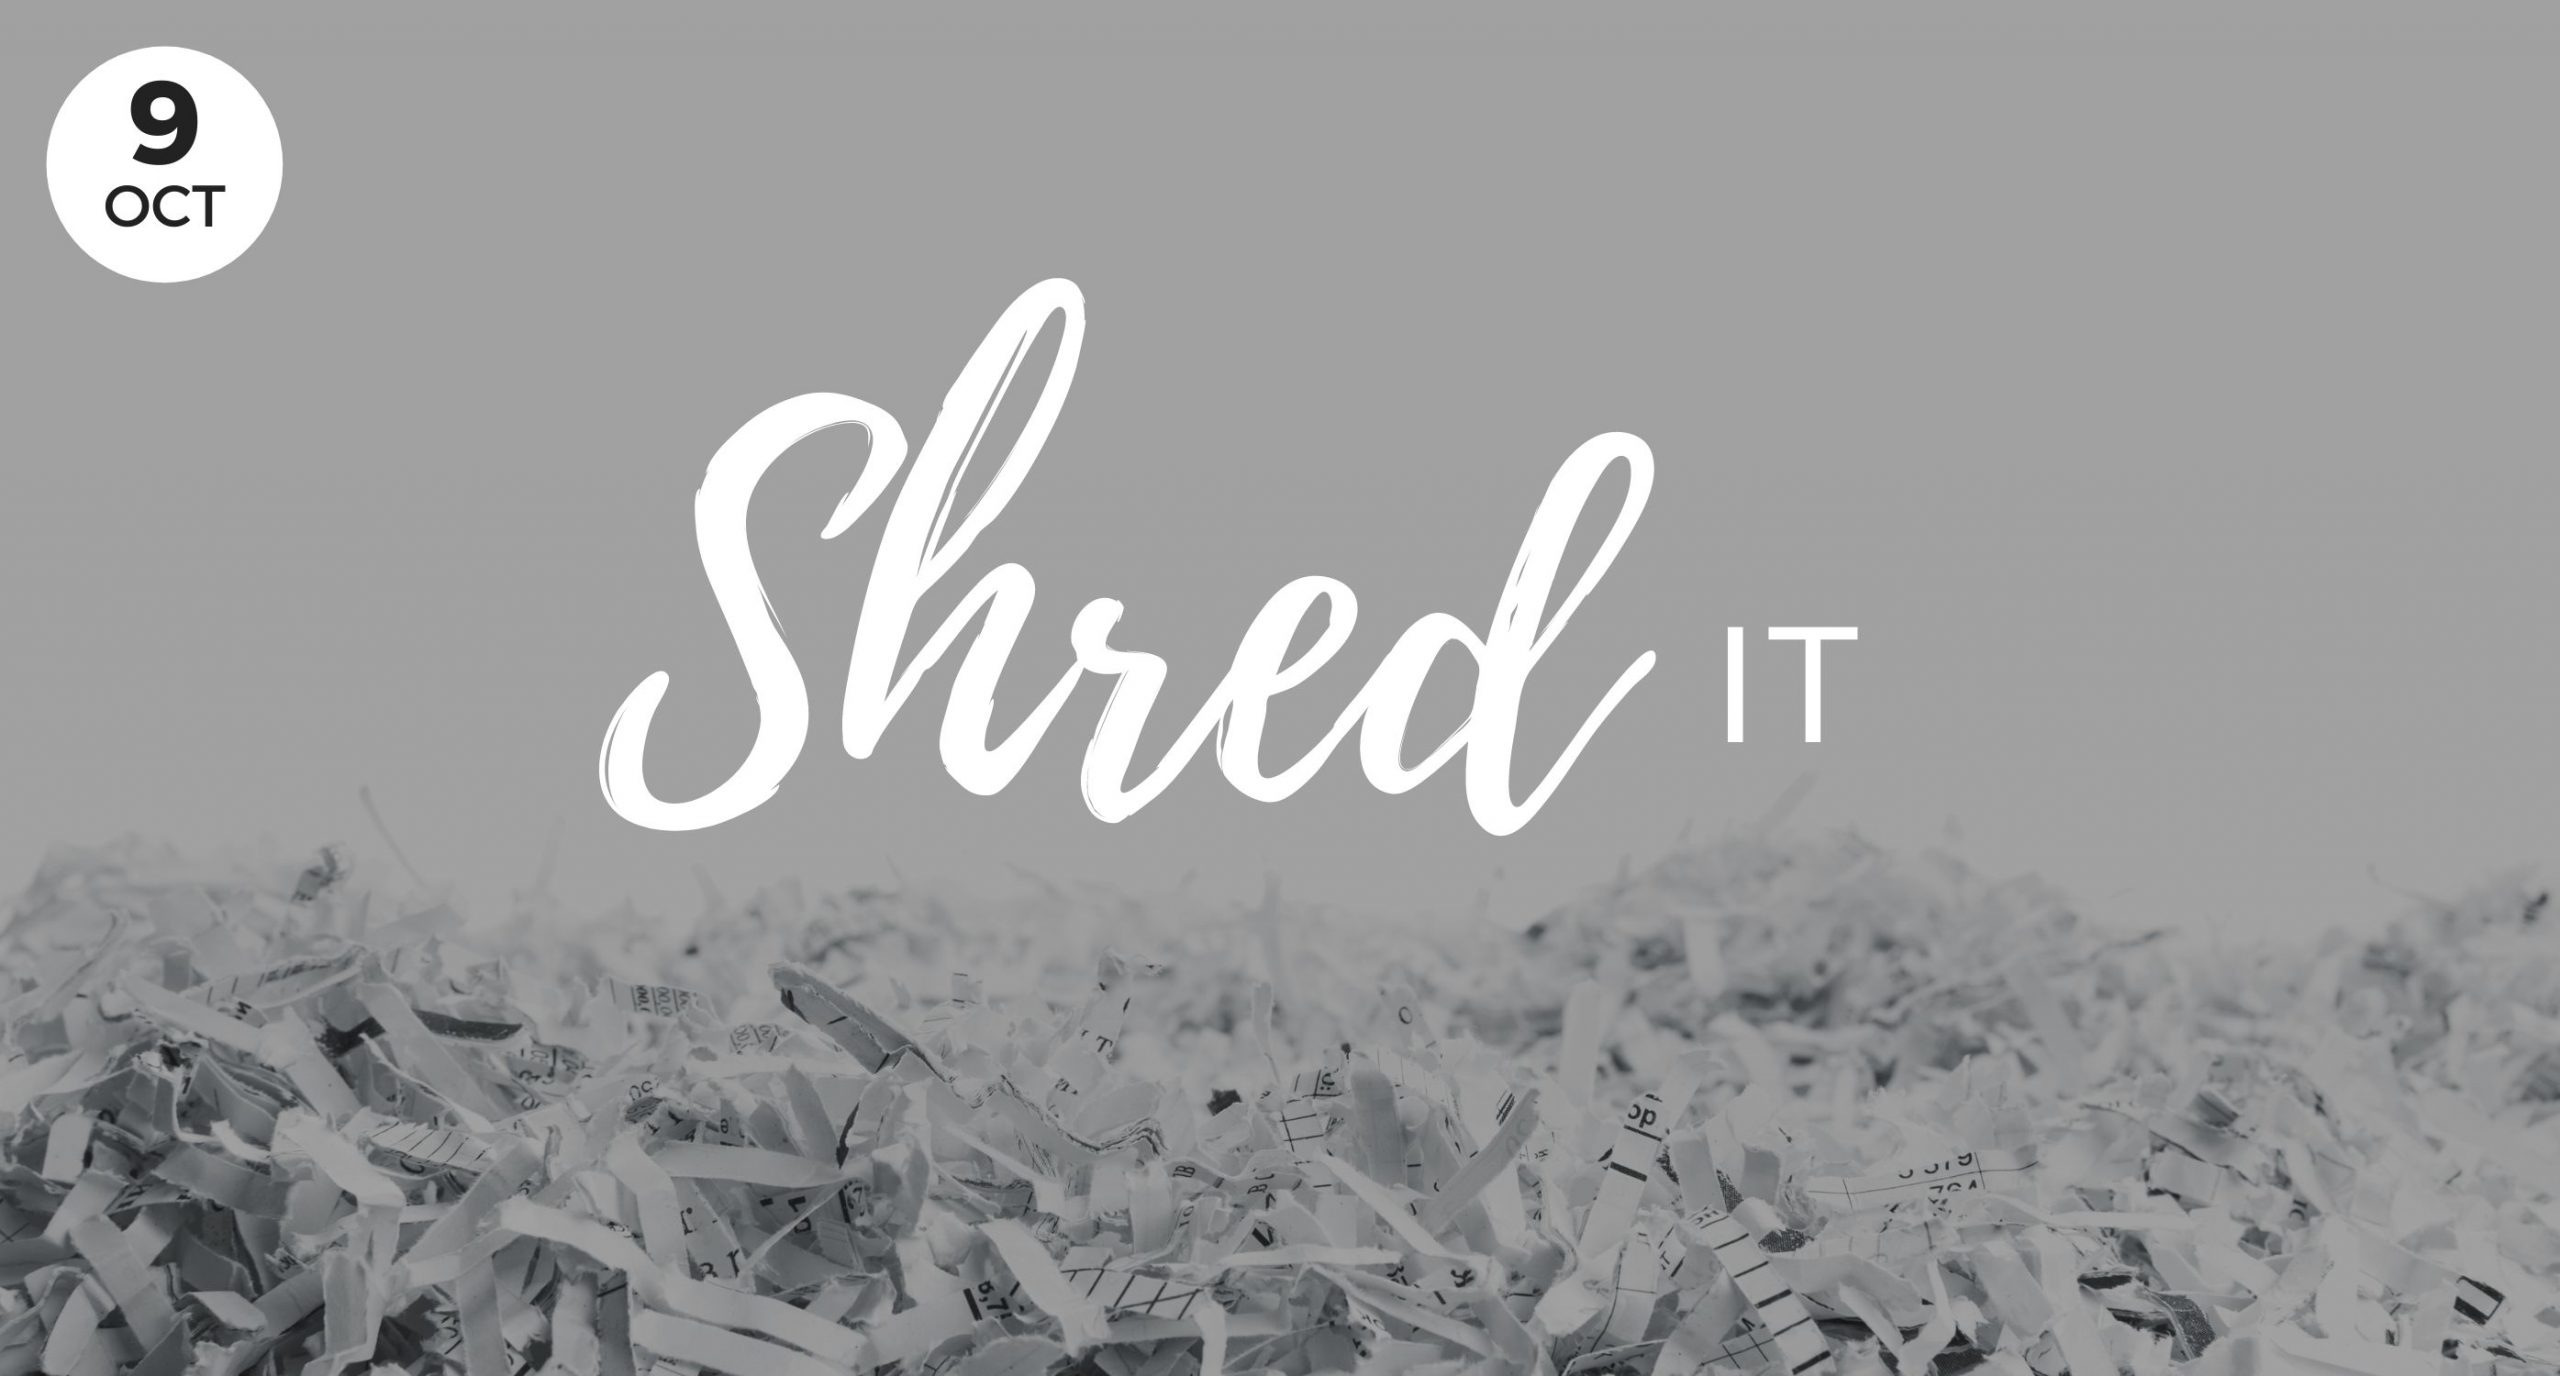 Shred-it, Local Event, Windermere Real Estate, Sponsor, Shred, Safe